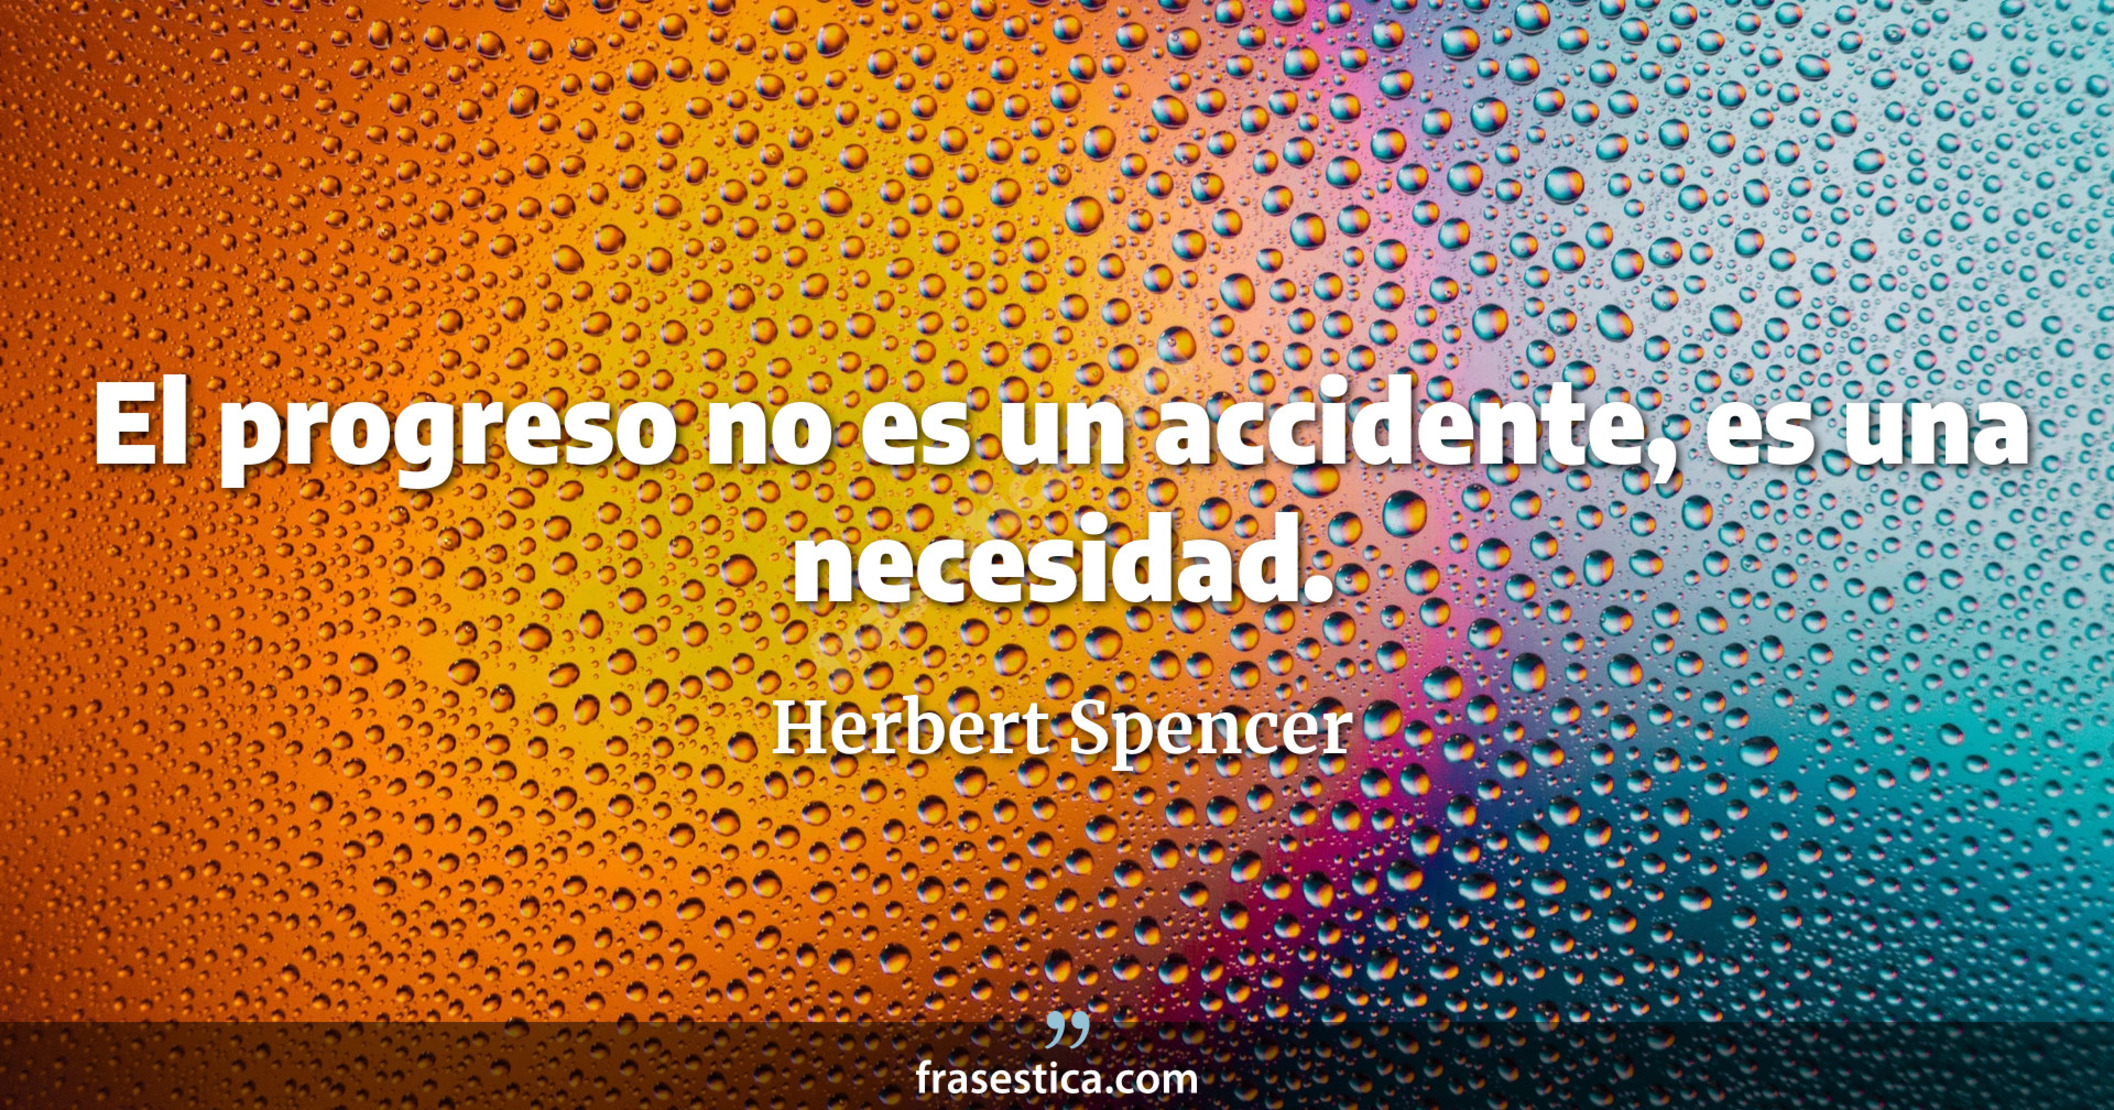 El progreso no es un accidente, es una necesidad. - Herbert Spencer